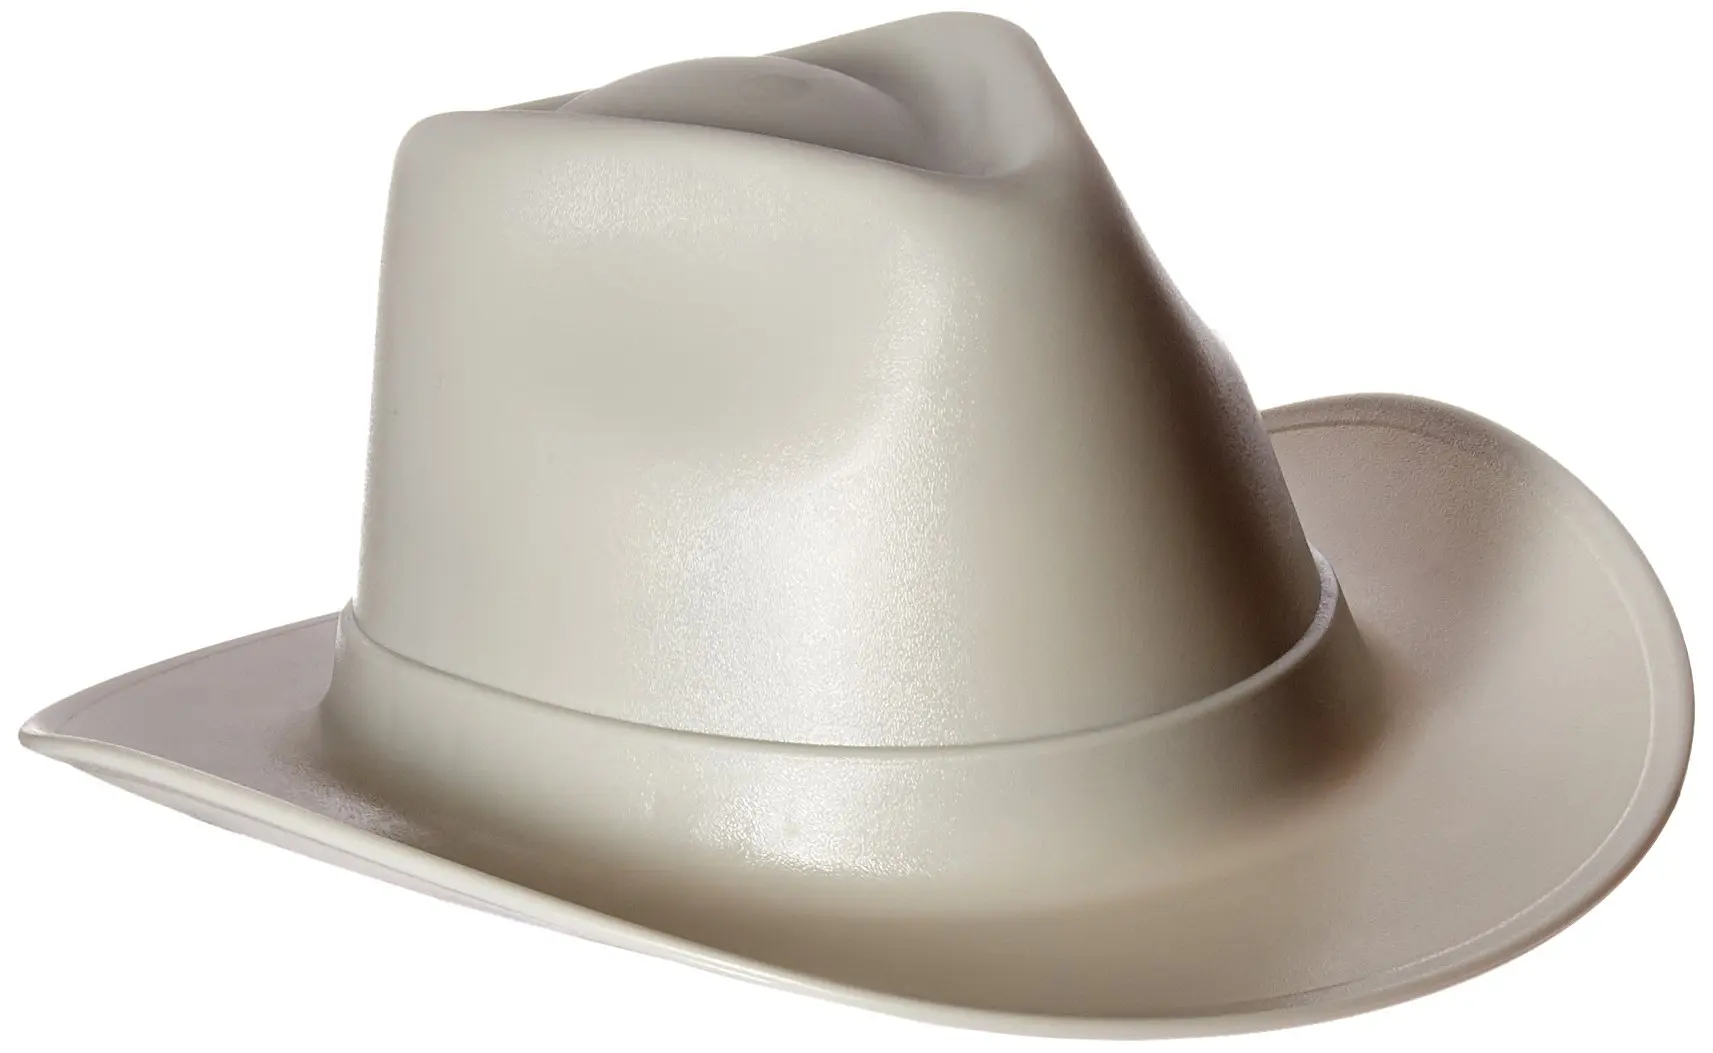 Каска в форме шляпы. Каска защитная ковбойская шляпа. Vulka vcb100-00 hard hat строительная. Ковбойская каска строительная. Каска ковбойская шляпа строительная.